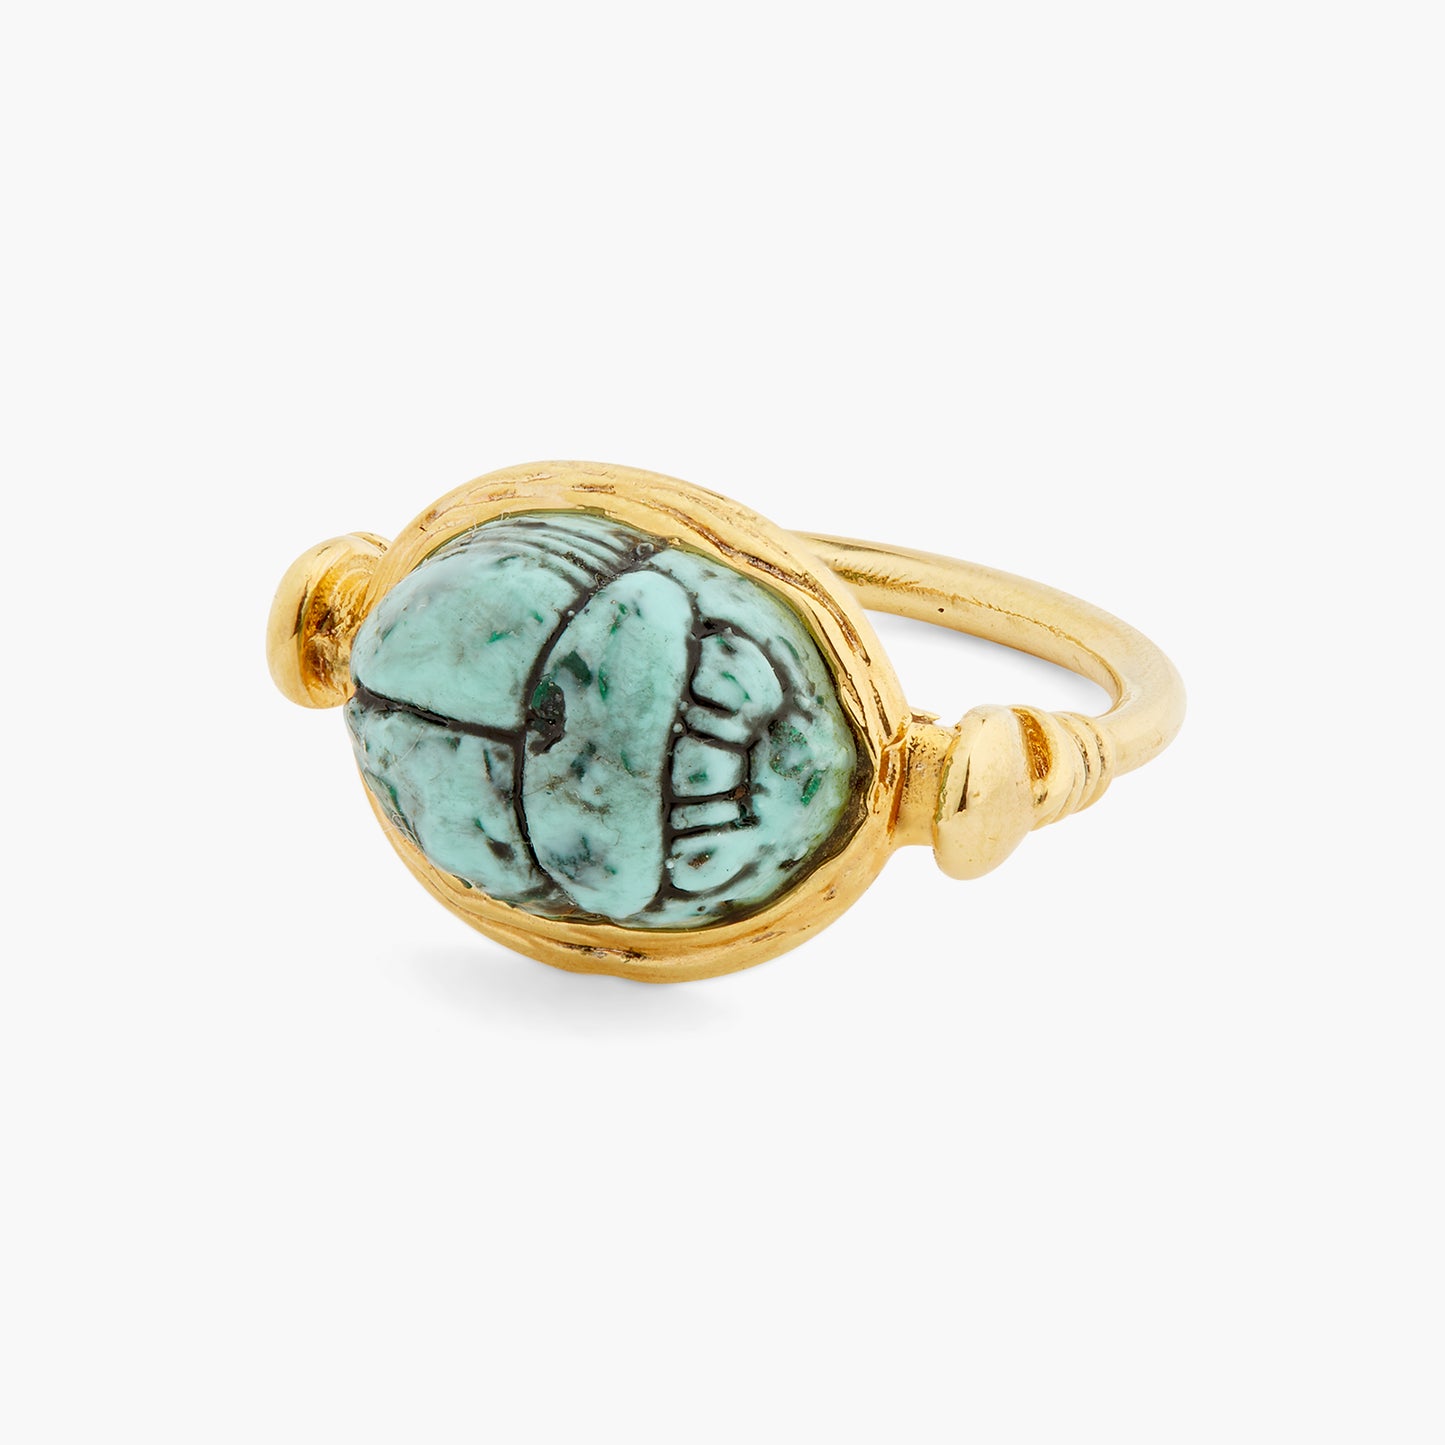 Turquoise Scarab Beetle Ring | ASNI6011